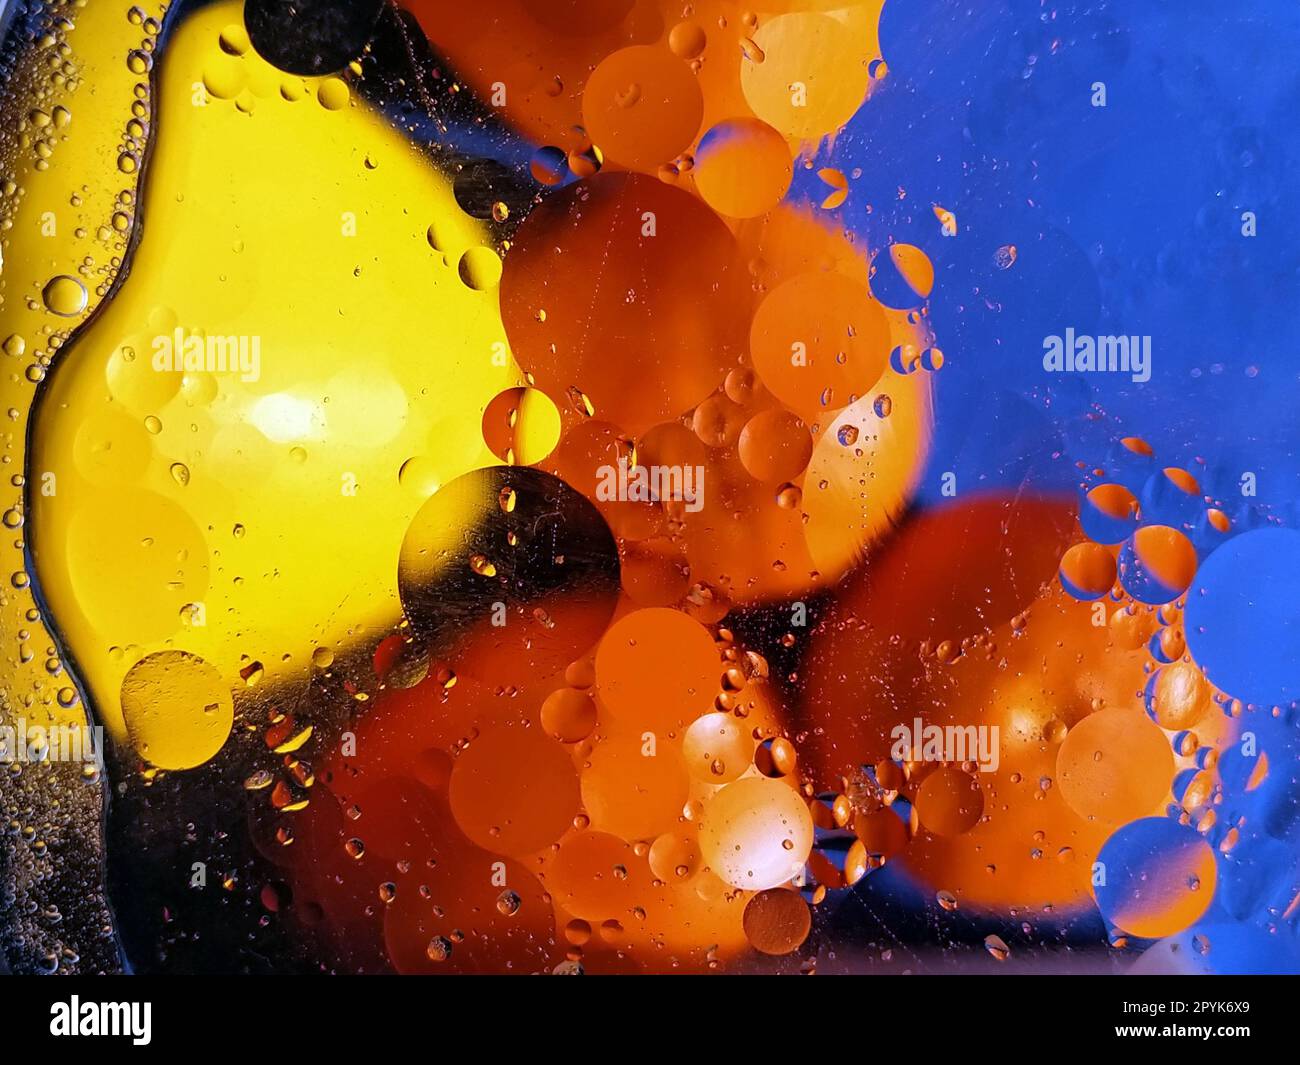 Obst unter Glas, Wasser und Pflanzenöl. Unscharfer blauer Hintergrund. Leuchtende Orangen und Mandarinen. Ölkreise auf dem Wasser. Abstraktes Bild. Horizontale Fotografie Stockfoto